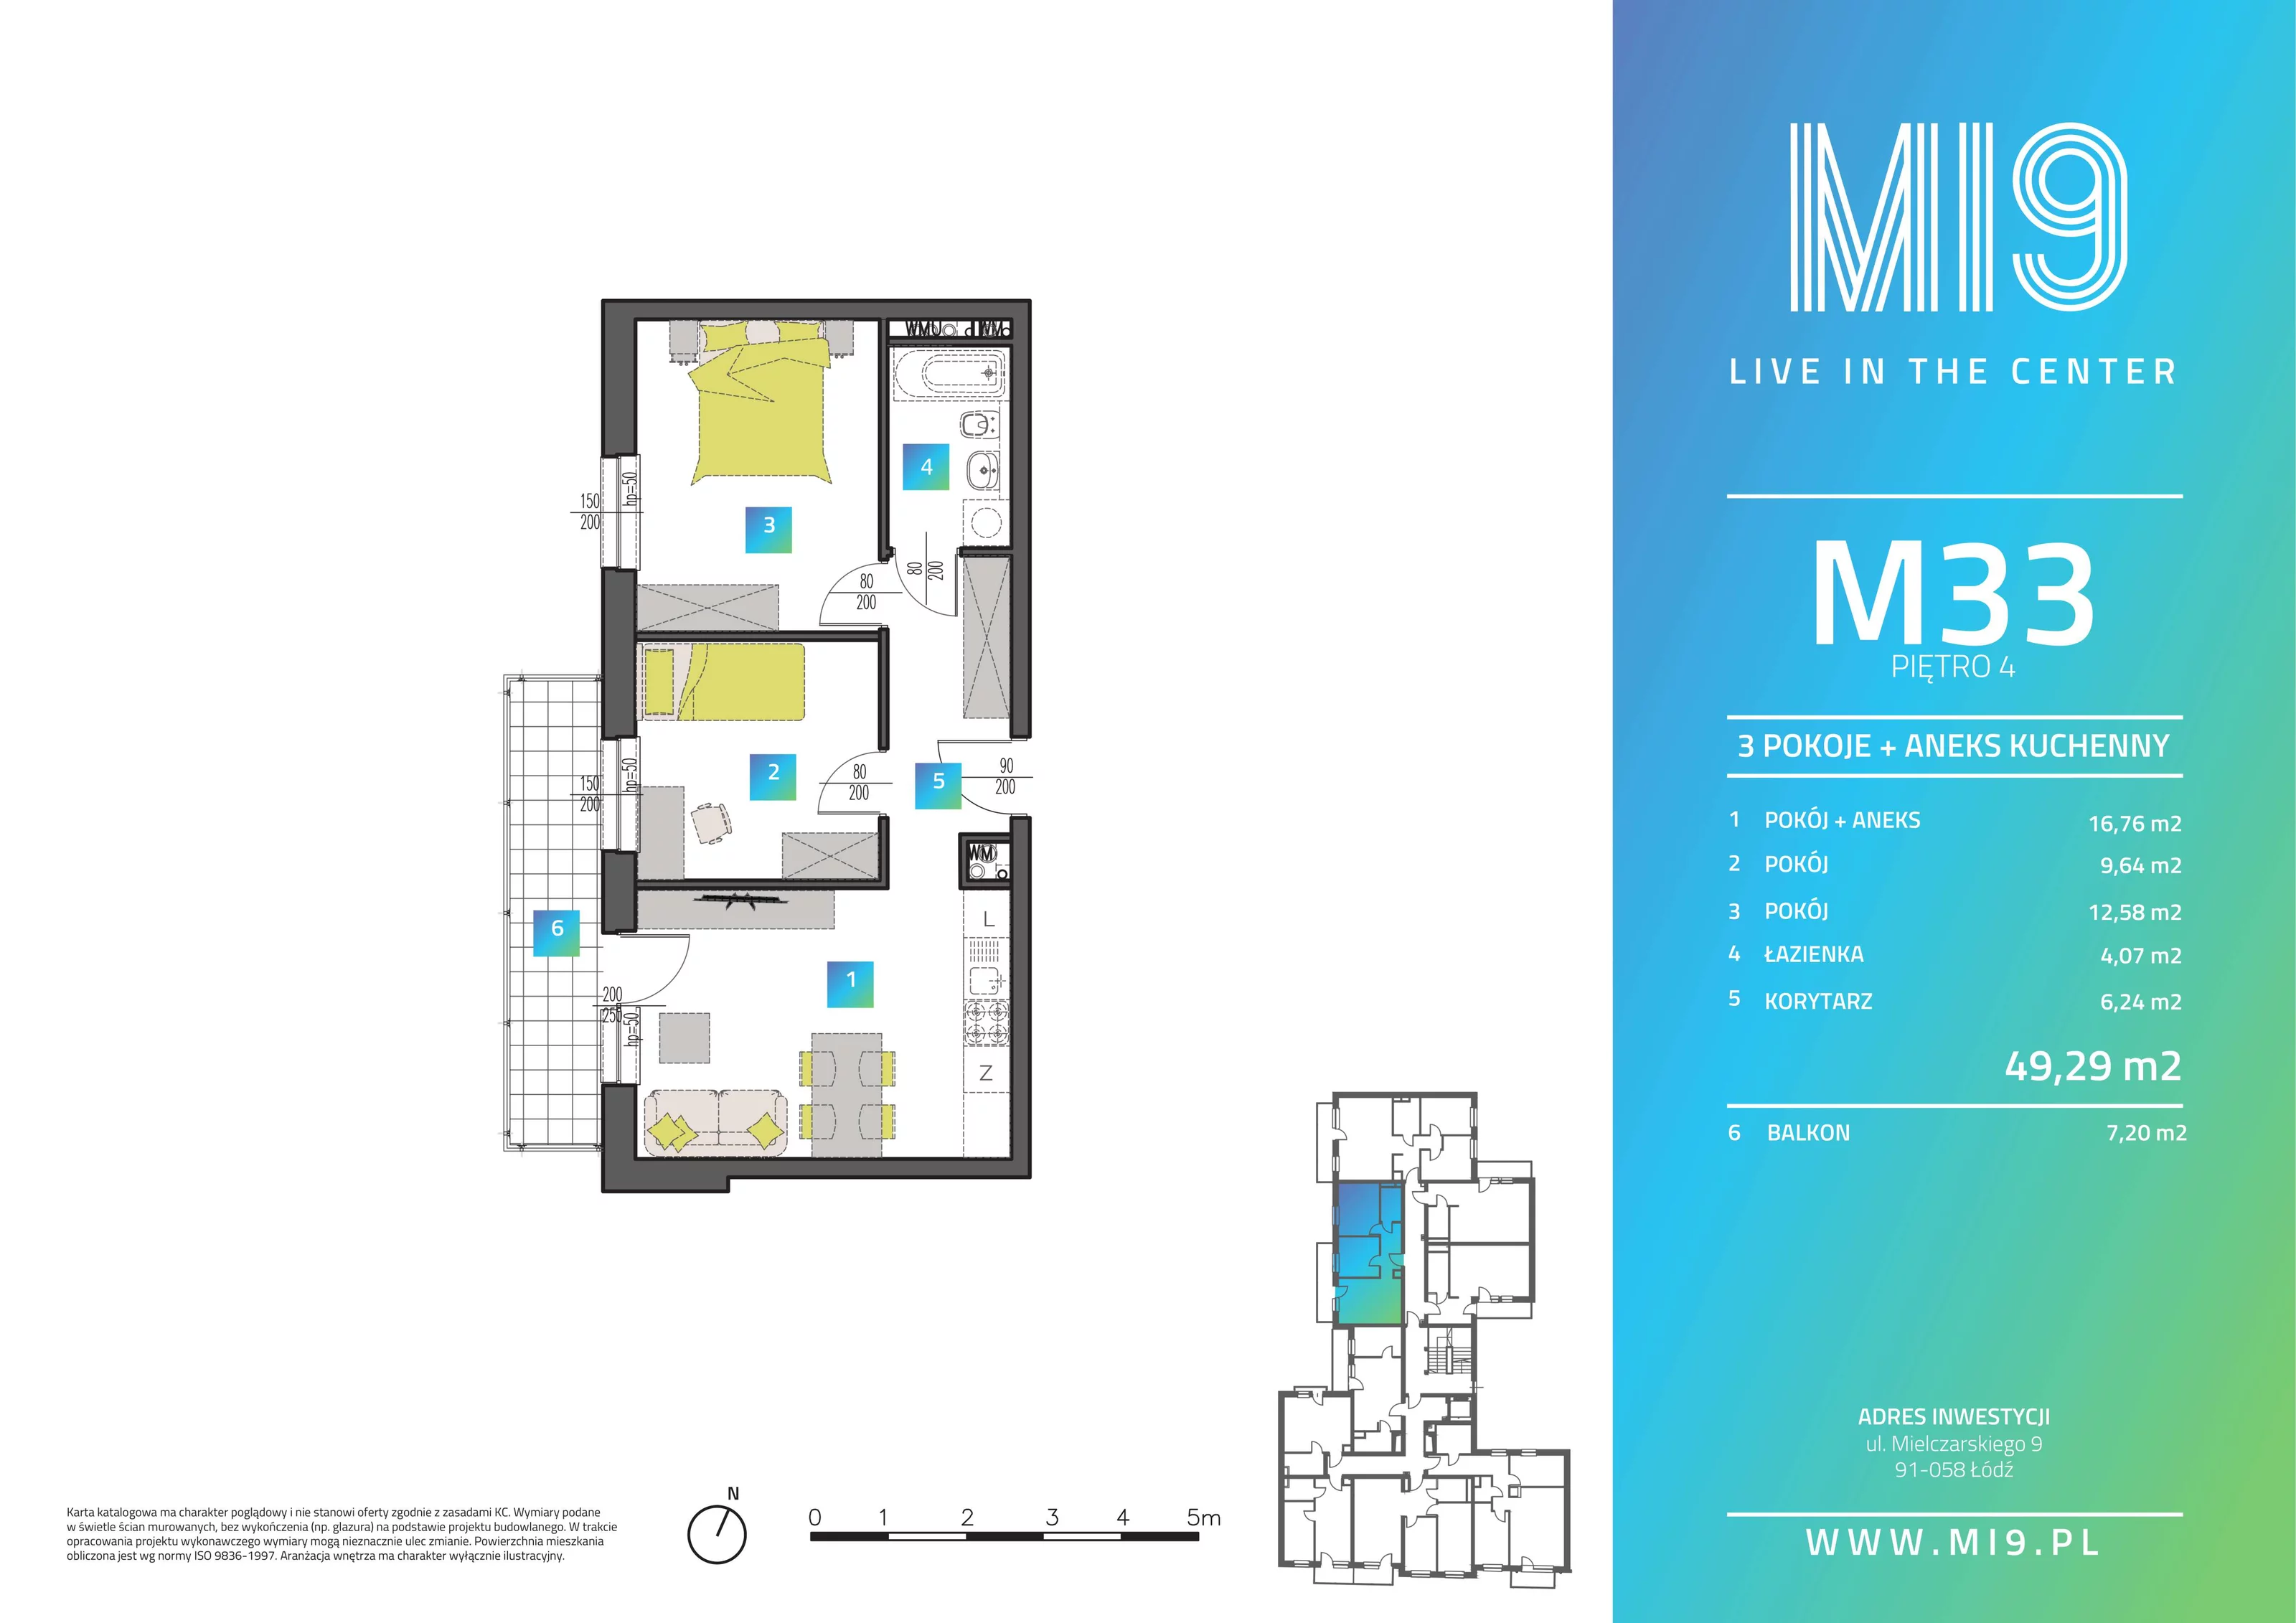 Apartament 49,42 m², piętro 4, oferta nr M33, Mi9, Łódź, Polesie, Stare Polesie, ul. Romualda Mielczarskiego 9